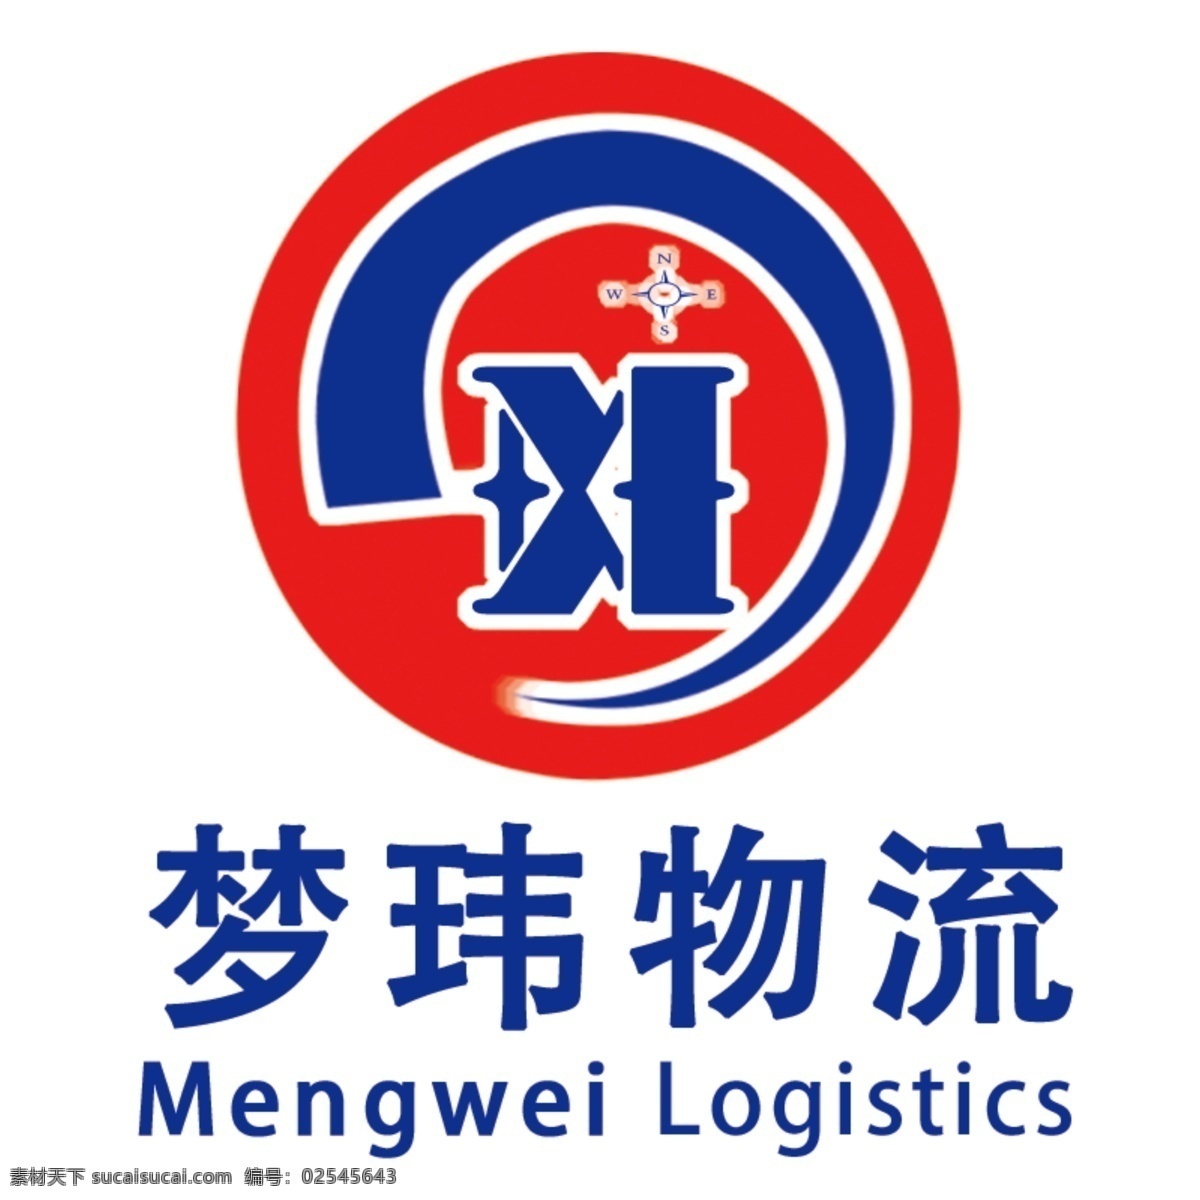 企业 logo 标识 商标 原创 企业logo mw 物流